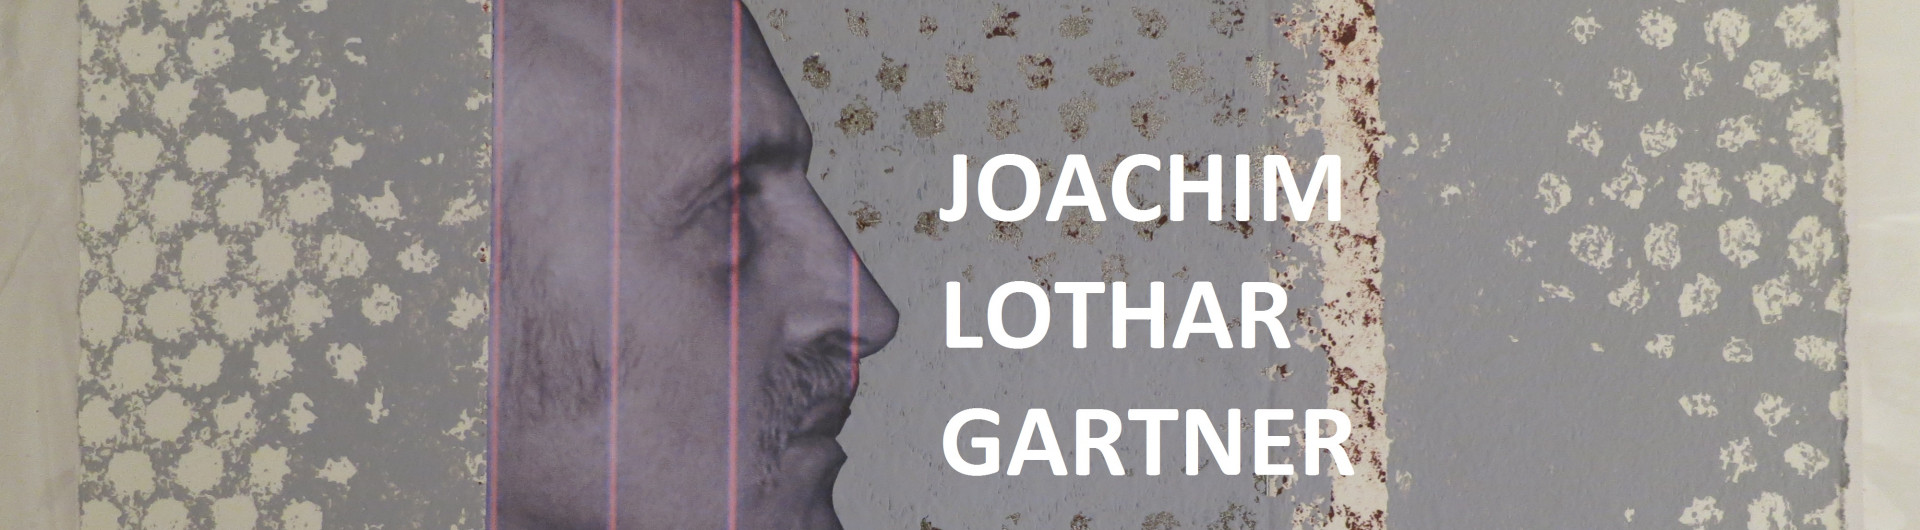 Joachim Lothar Gartner